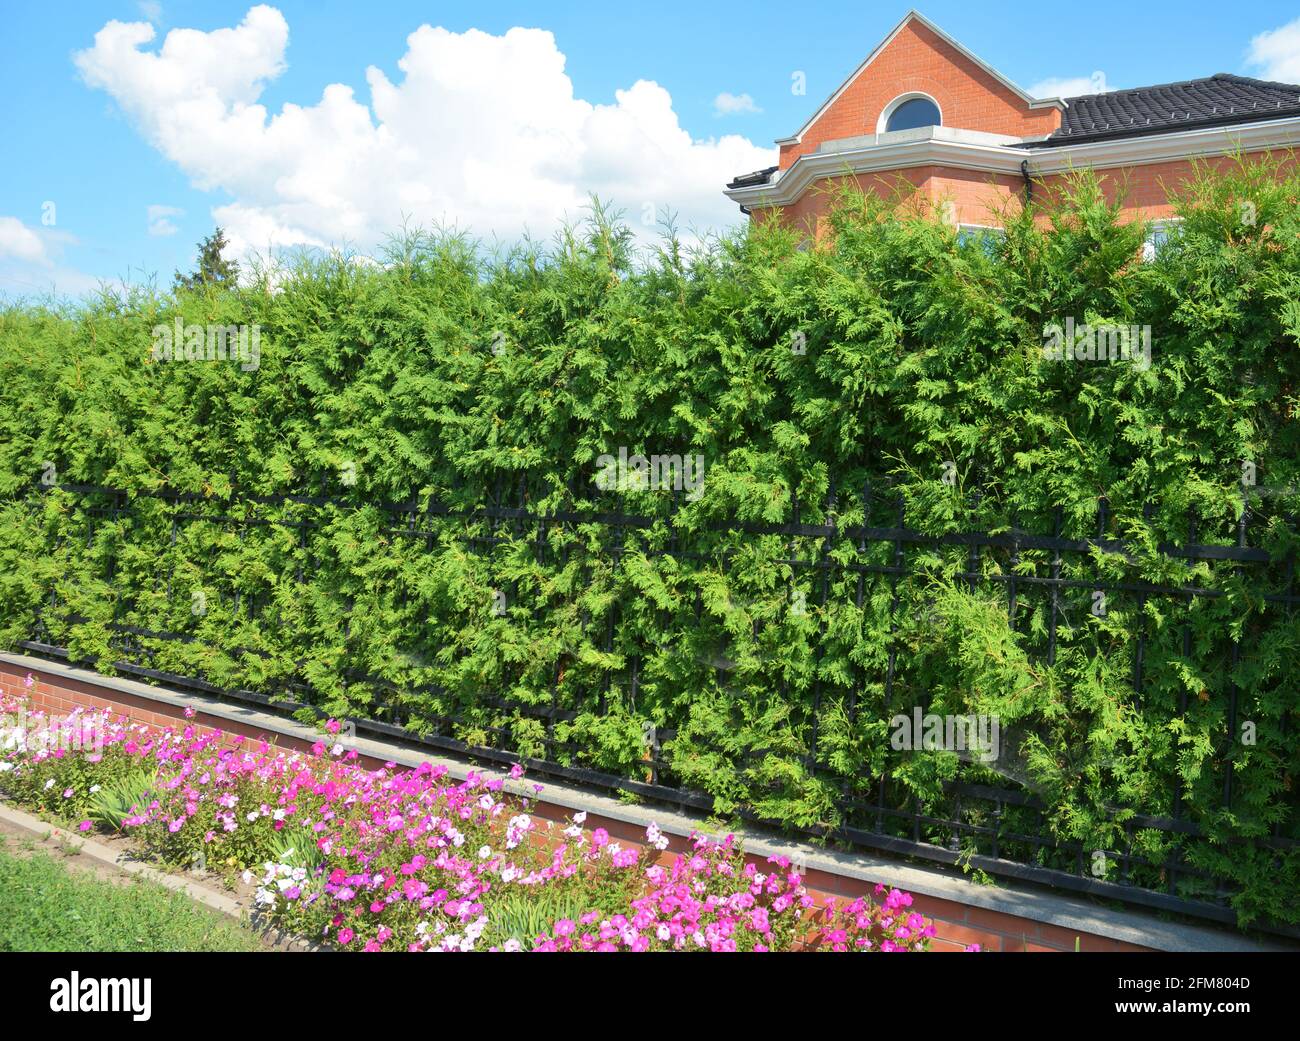 Ein schmiedeeiserner, gusseiserner Zaun mit einem dicken smaragdgrünen Thuja, einer grünen Hecke mit Arborvitae, einer Sichtschutz-Hecke und einem schmalen Blumenbeet mit Petunienblüten. Stockfoto